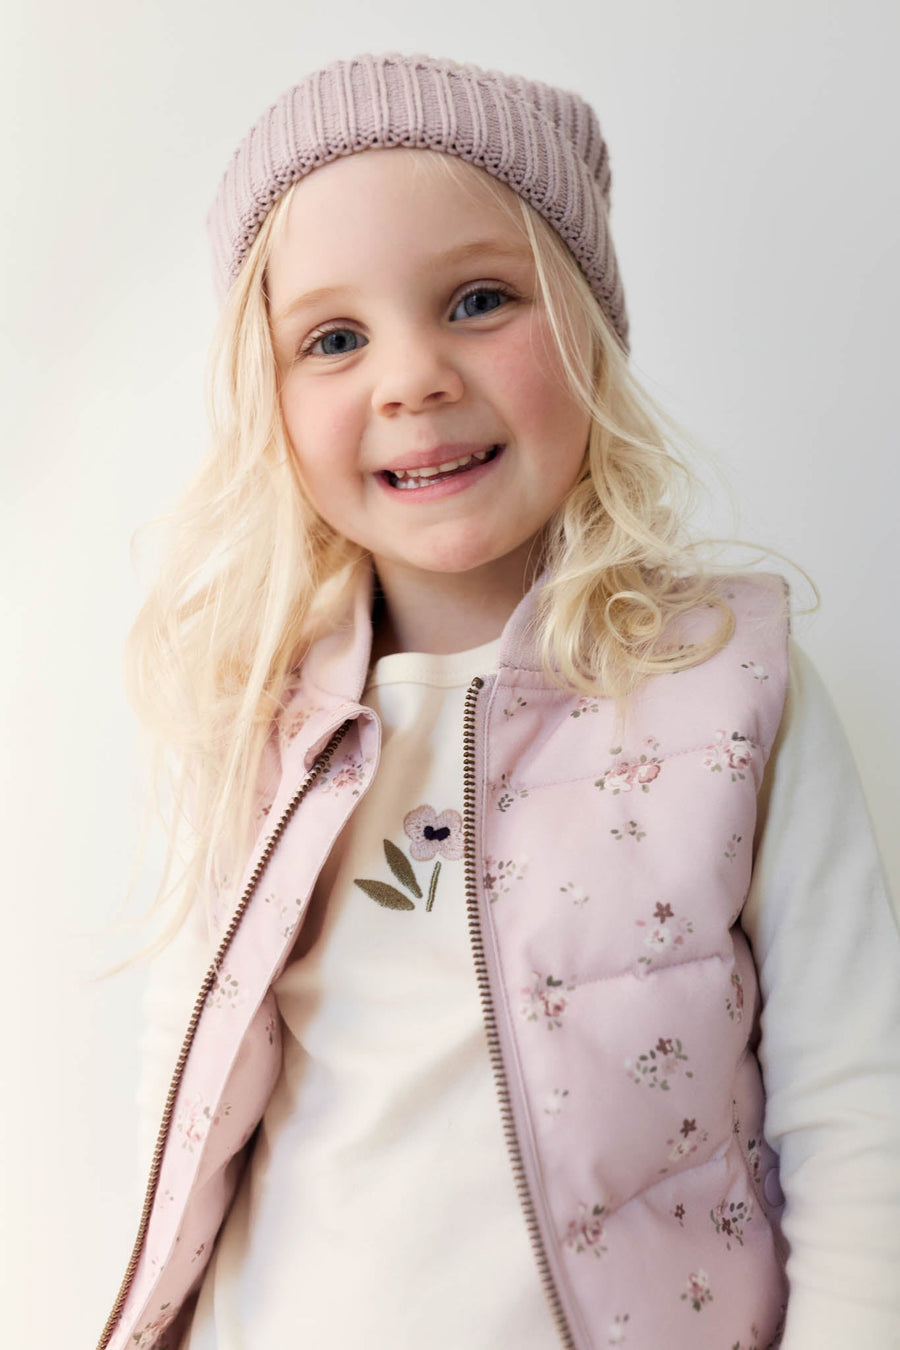 Taylor Vest - Petite Fleur Violet Childrens Vest from Jamie Kay USA